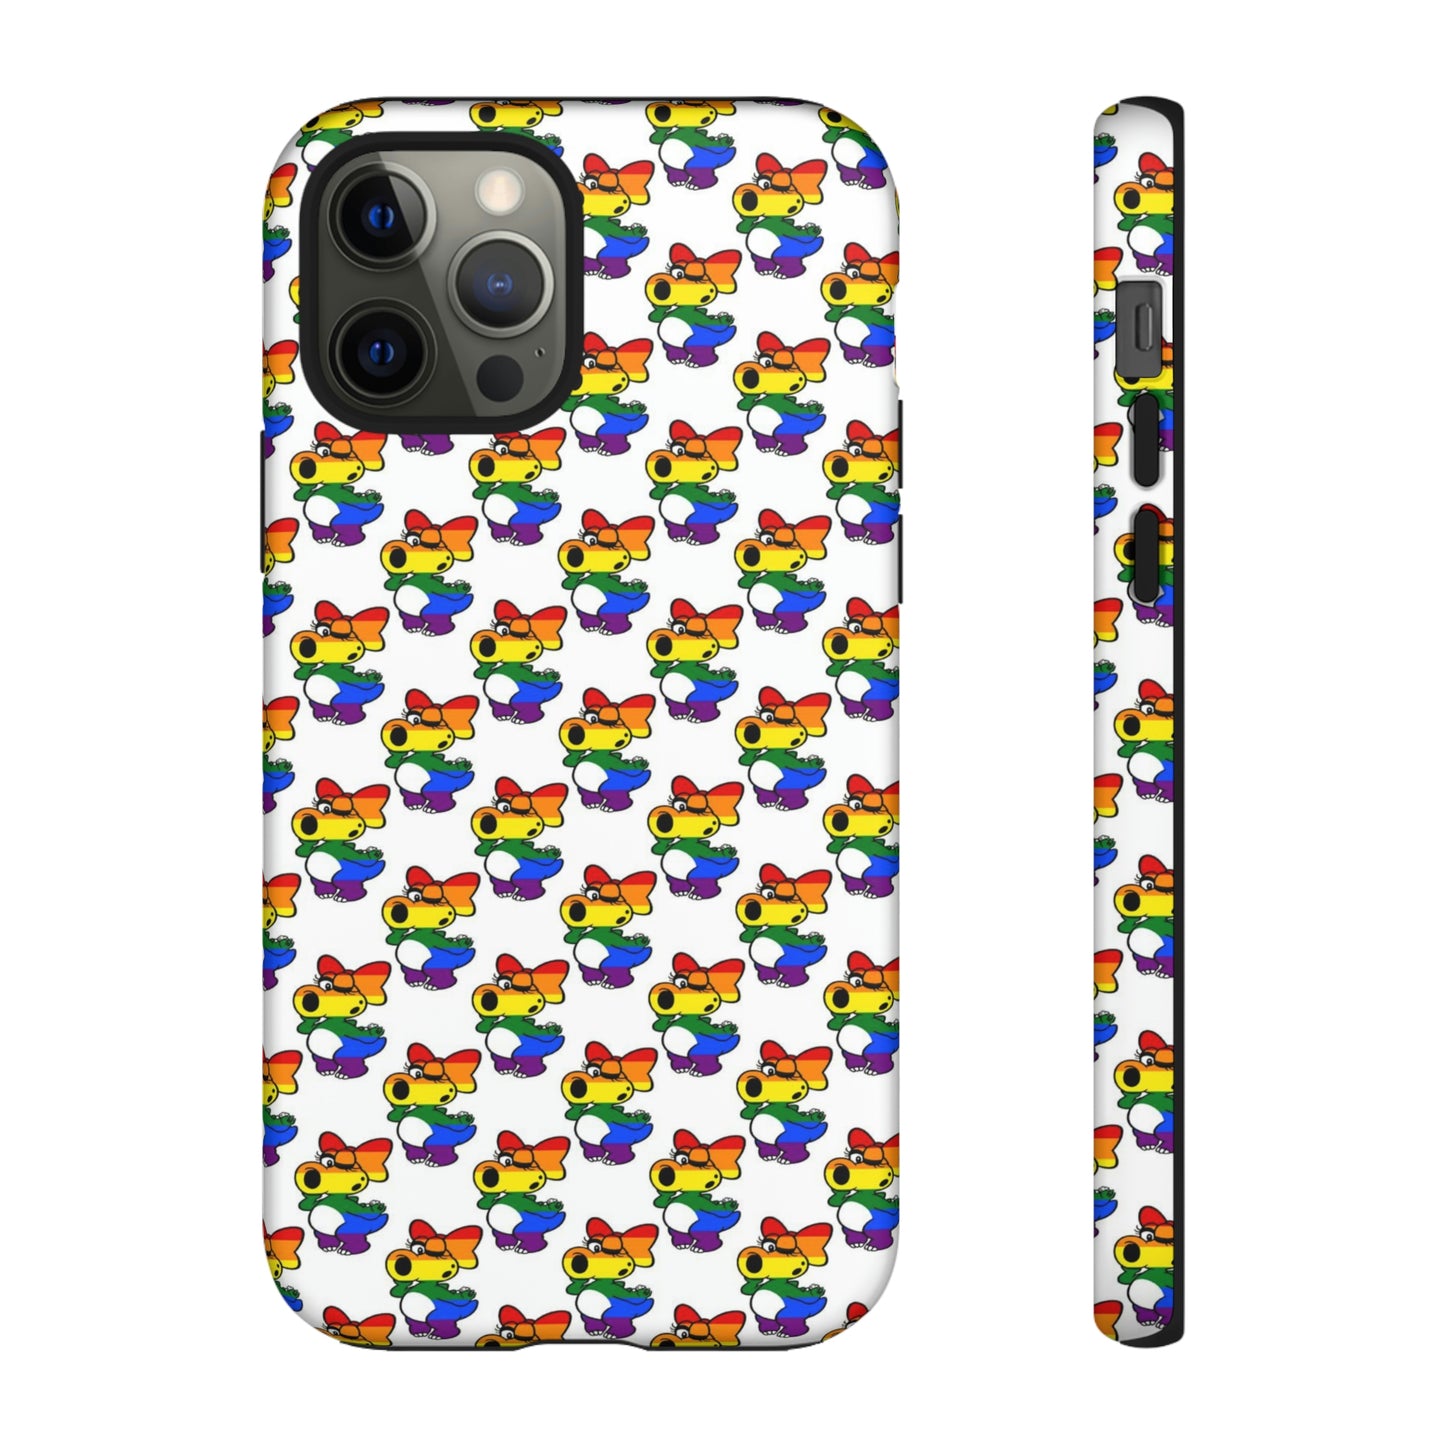 Super Mario Tough Case - LGTBirdo Pattern